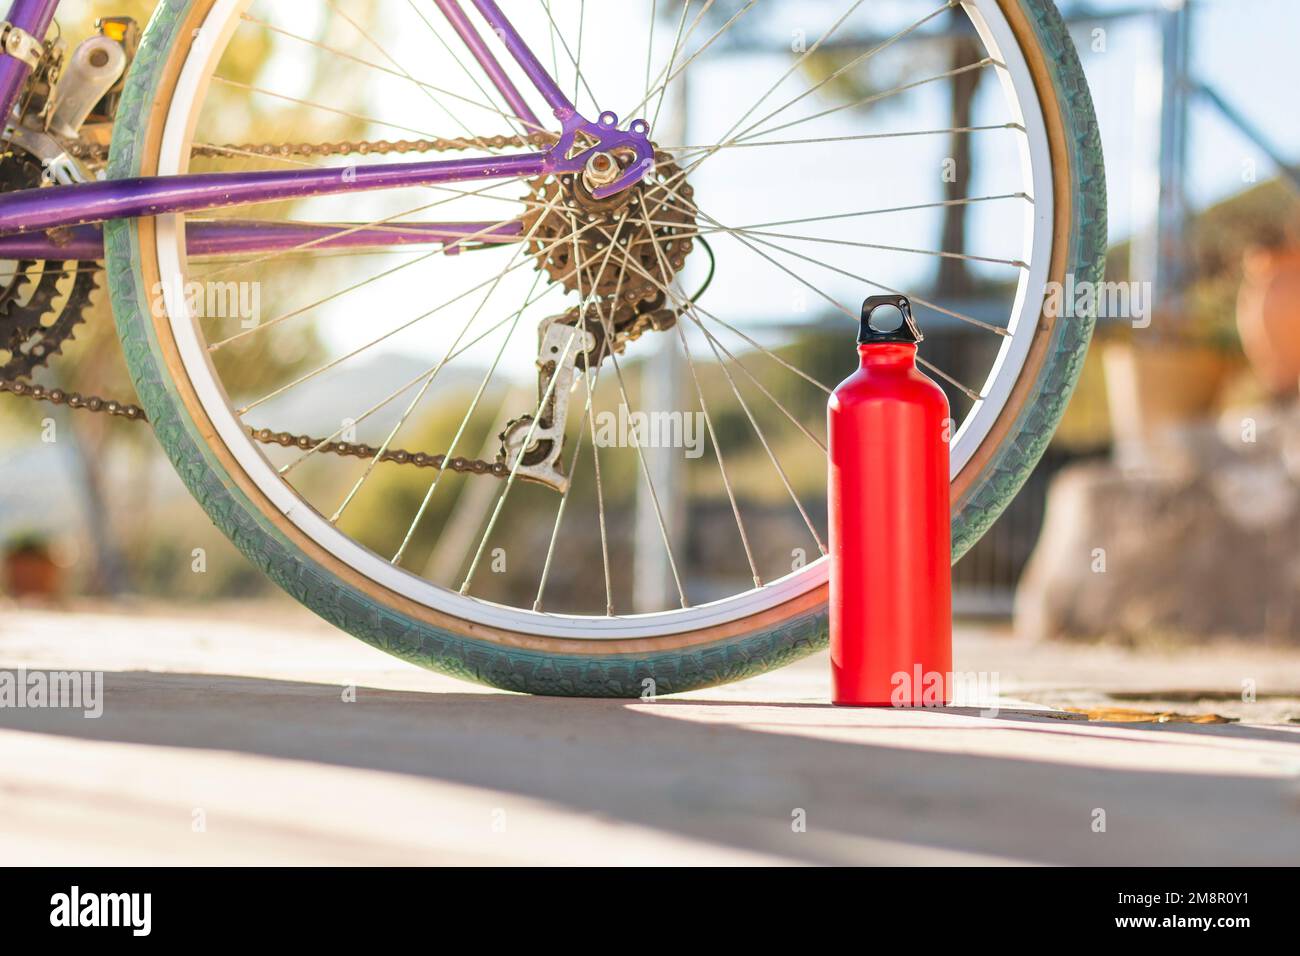 Sur une surface pavée grise, une bouteille en aluminium rouge avec un capuchon noir devant une roue de vélo avec un pneu vert. L'arrière-plan est hors foyer Banque D'Images